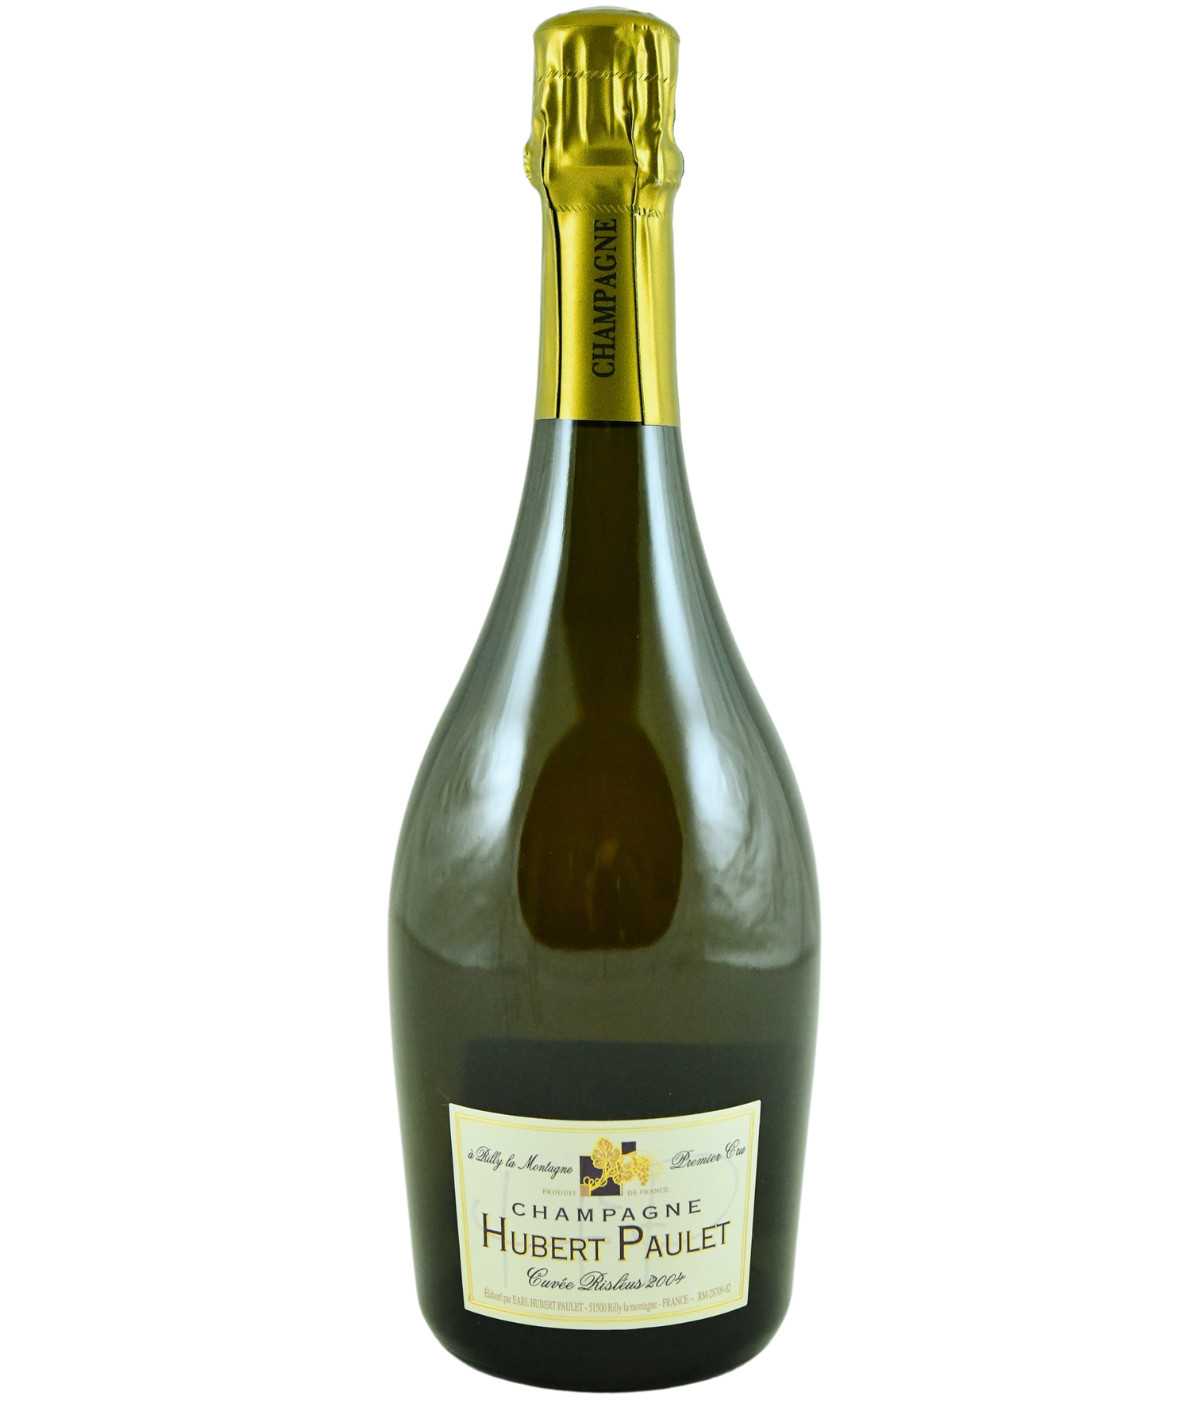 HUBERT PAULET champagne Cuvée Risléus Premier Cru vintage